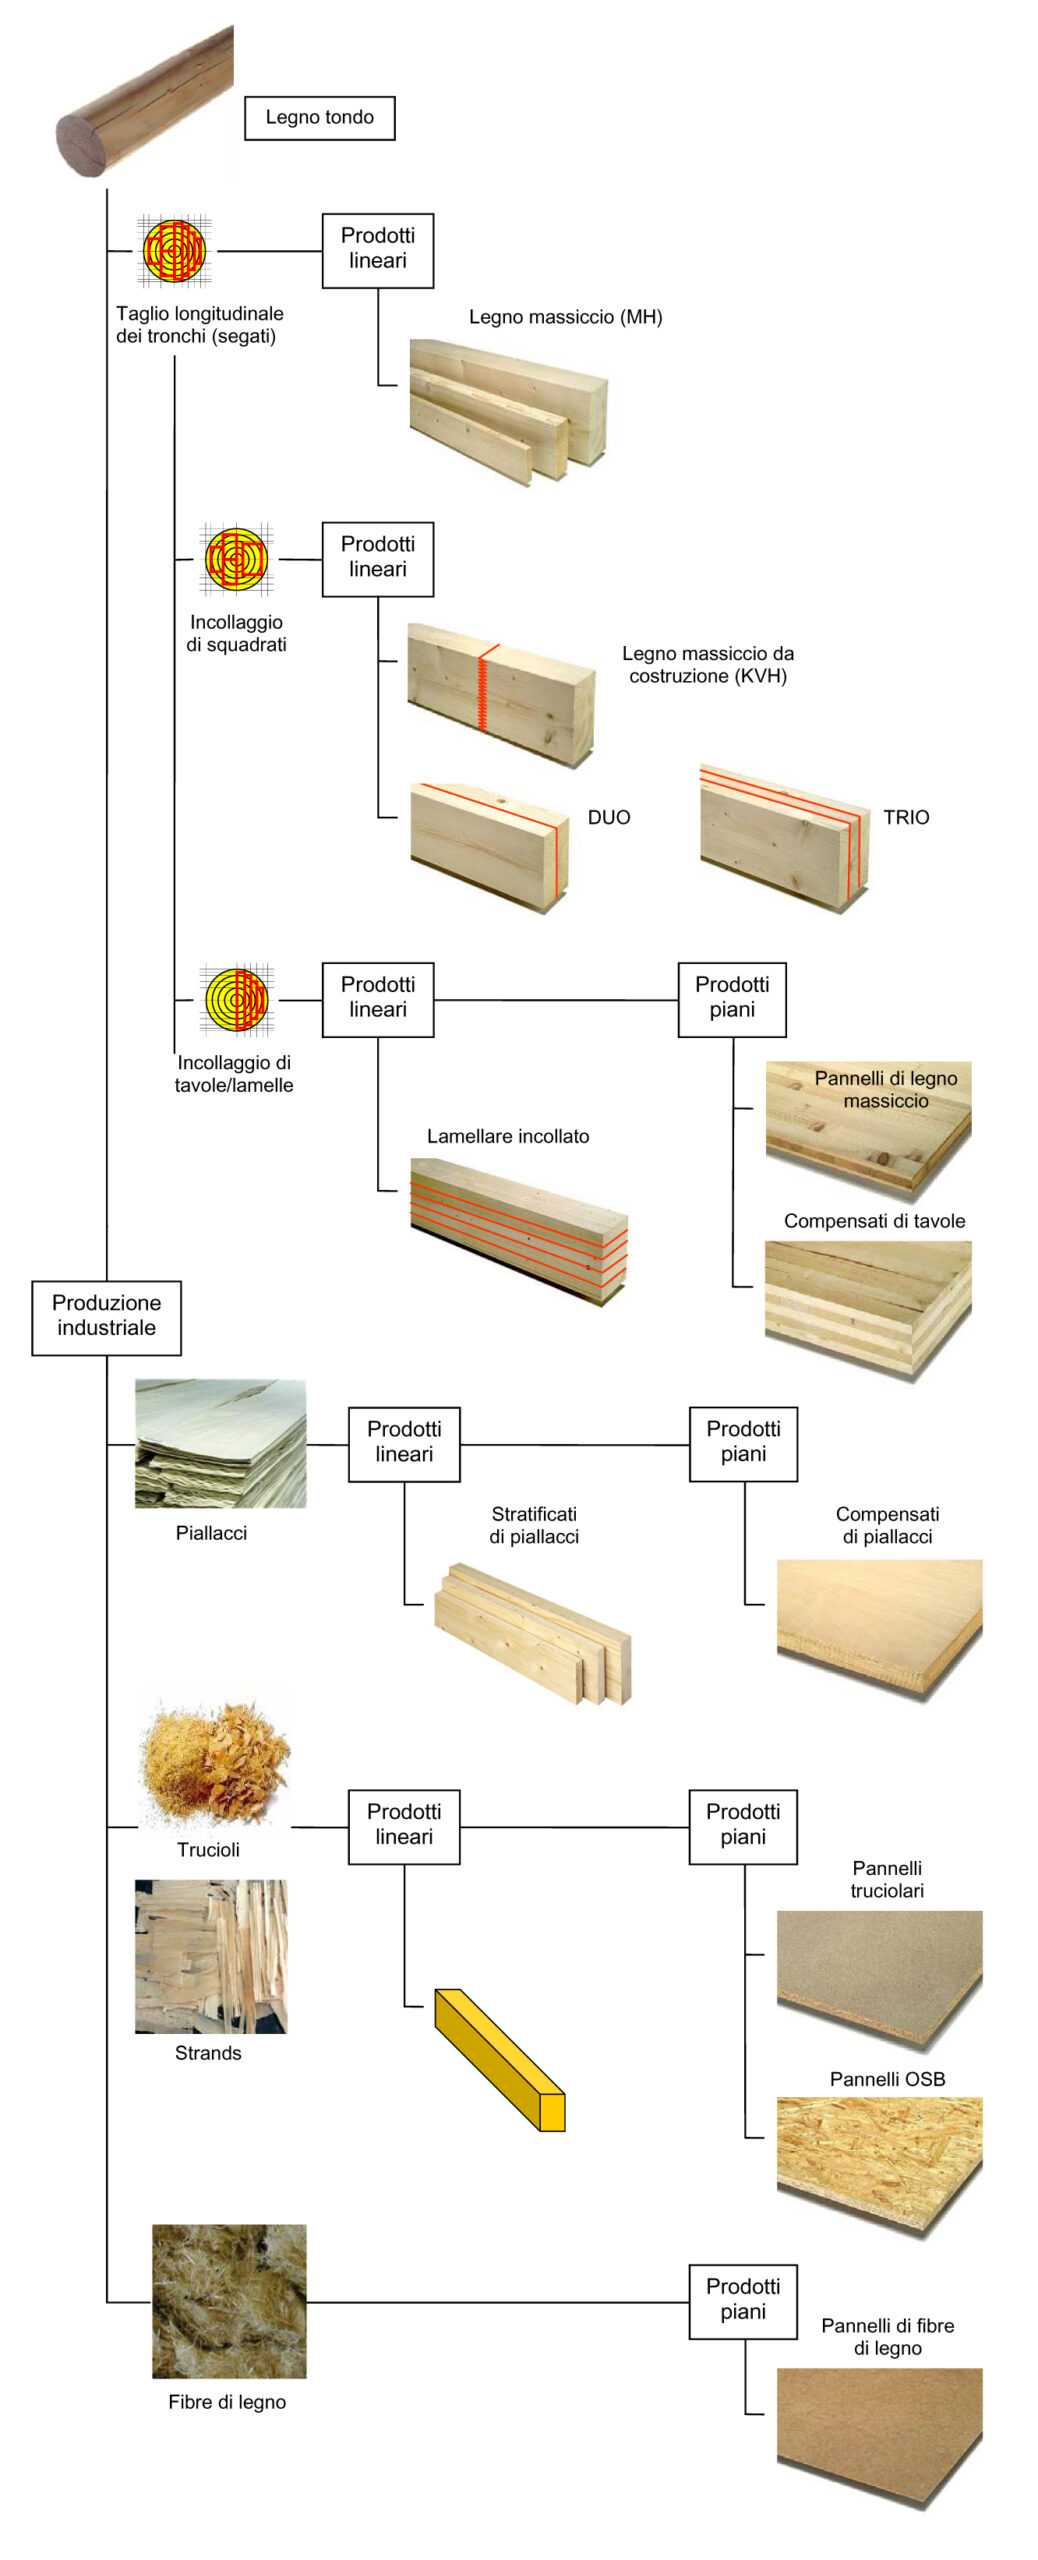 Veduta d’insieme sui prodotti di legno per le costruzioni